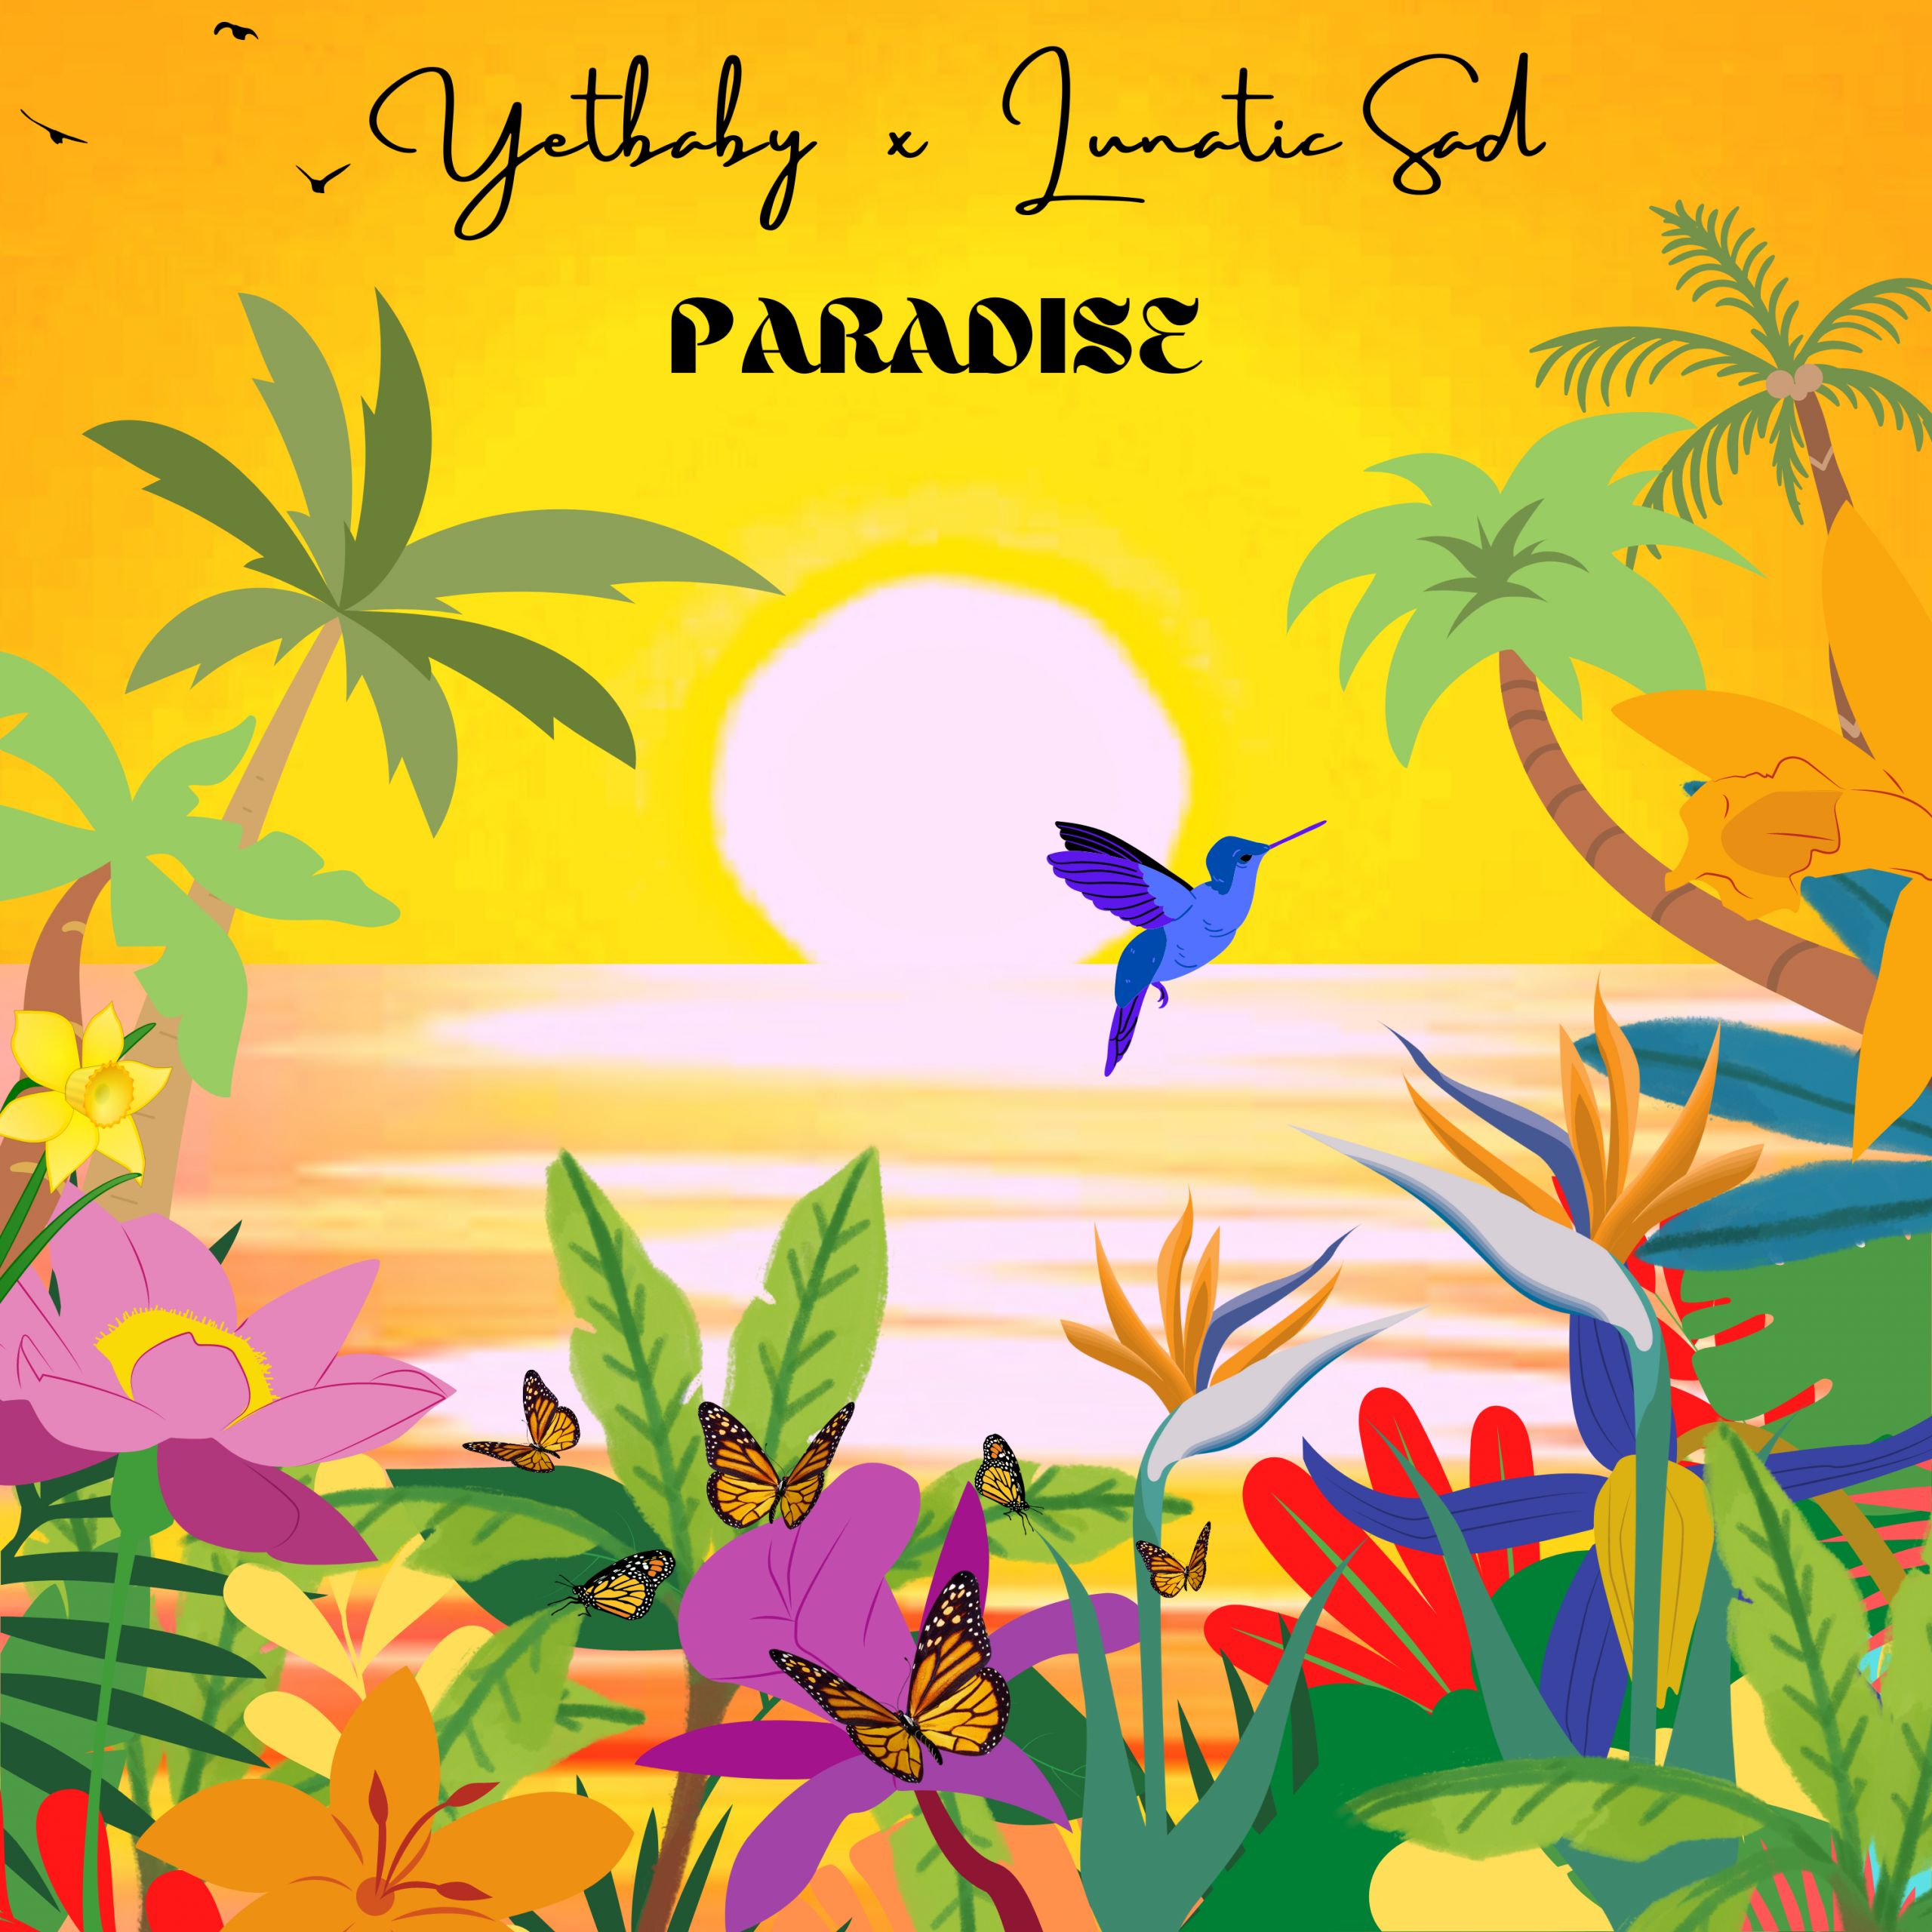 YetBaby con Lunatic Sad "Paradise", nuevo single instrumental